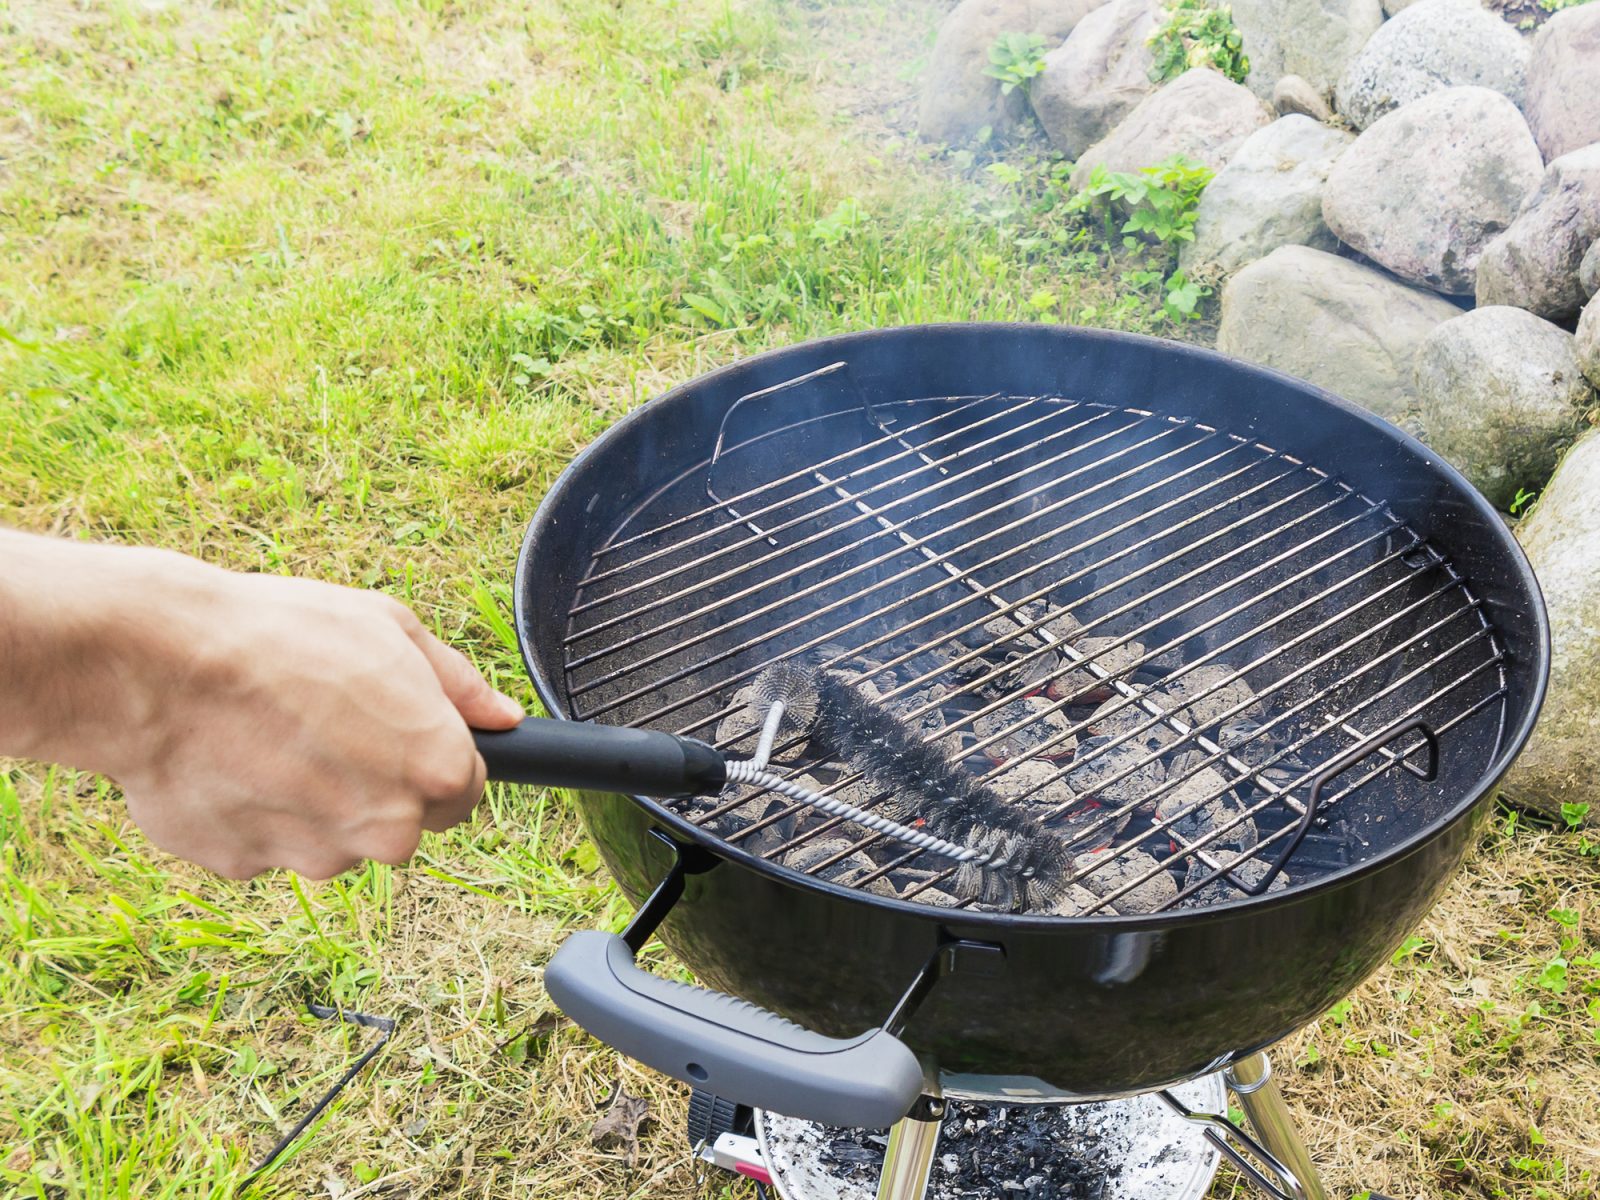 Comment choisir le bon charbon pour son barbecue ?